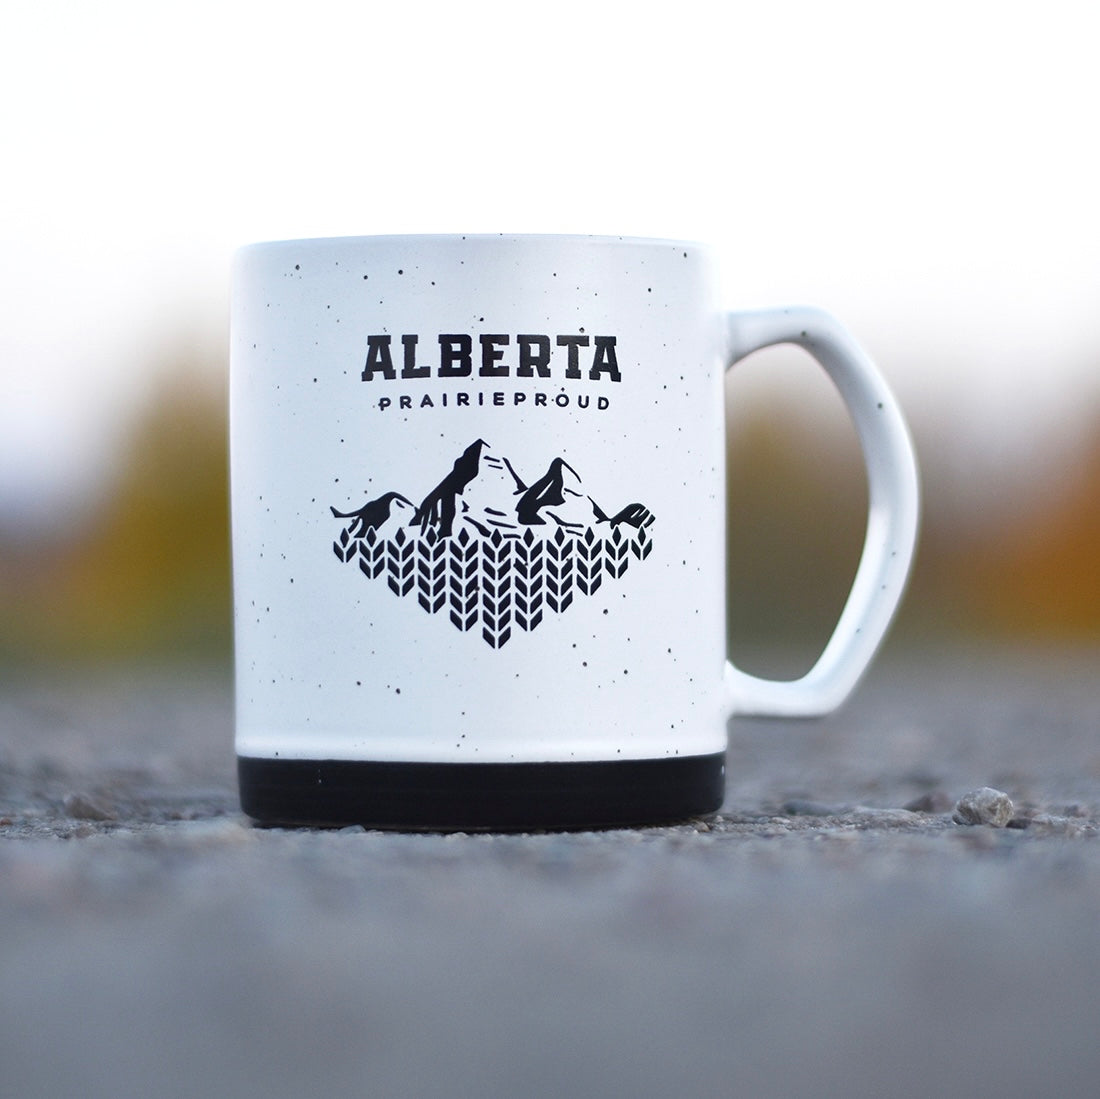 Decor - Alberta 7.0 Mug - White / Black